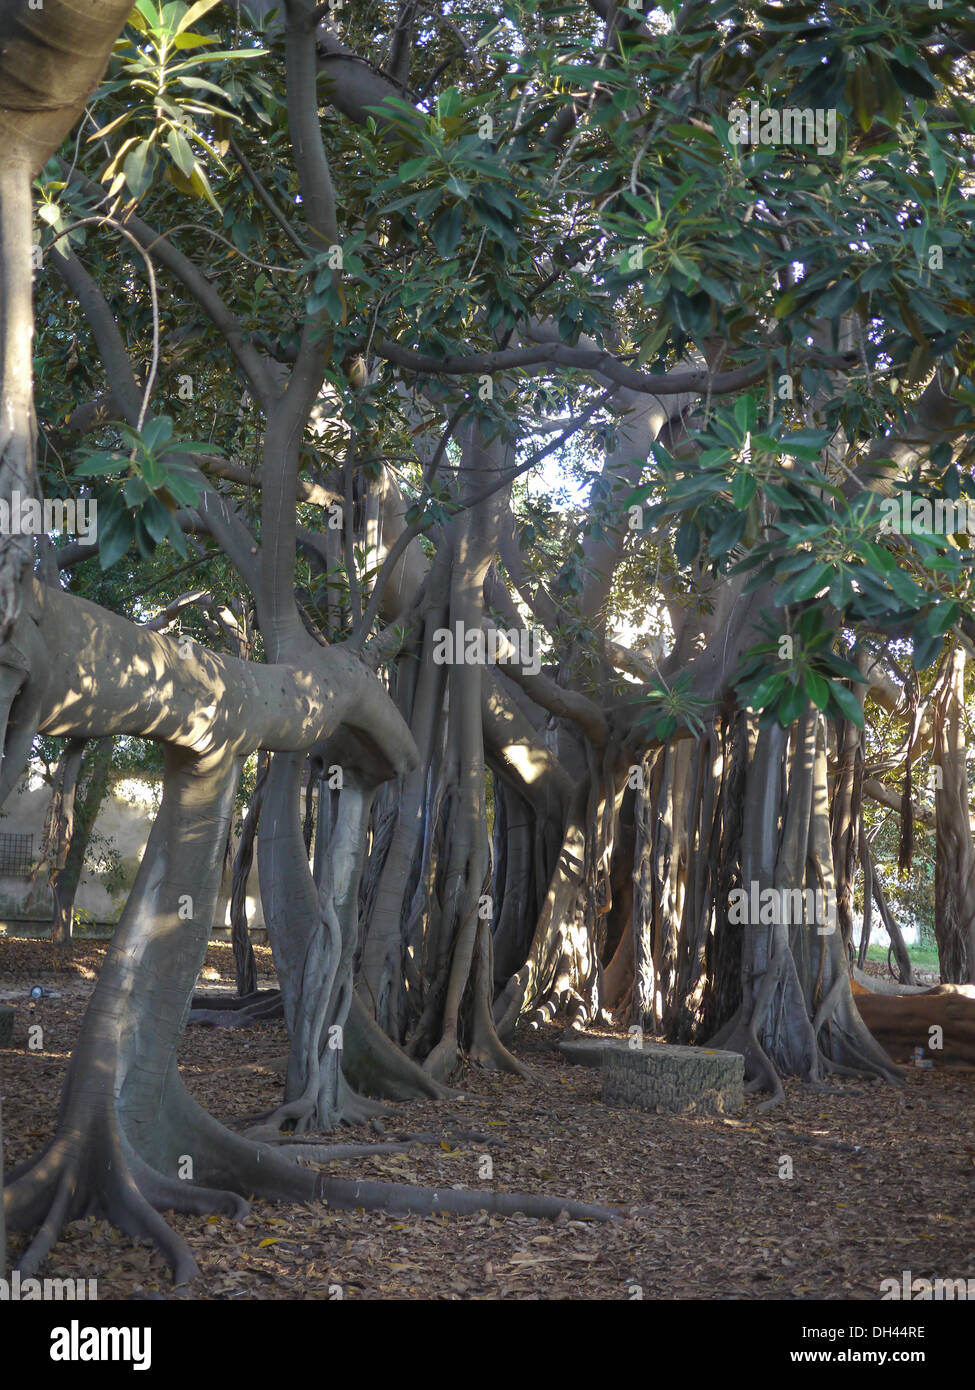 Racines de Ficus macrophylla Palerme jardin botanique (Orto botanico di Palermo), Sicile Italie Banque D'Images